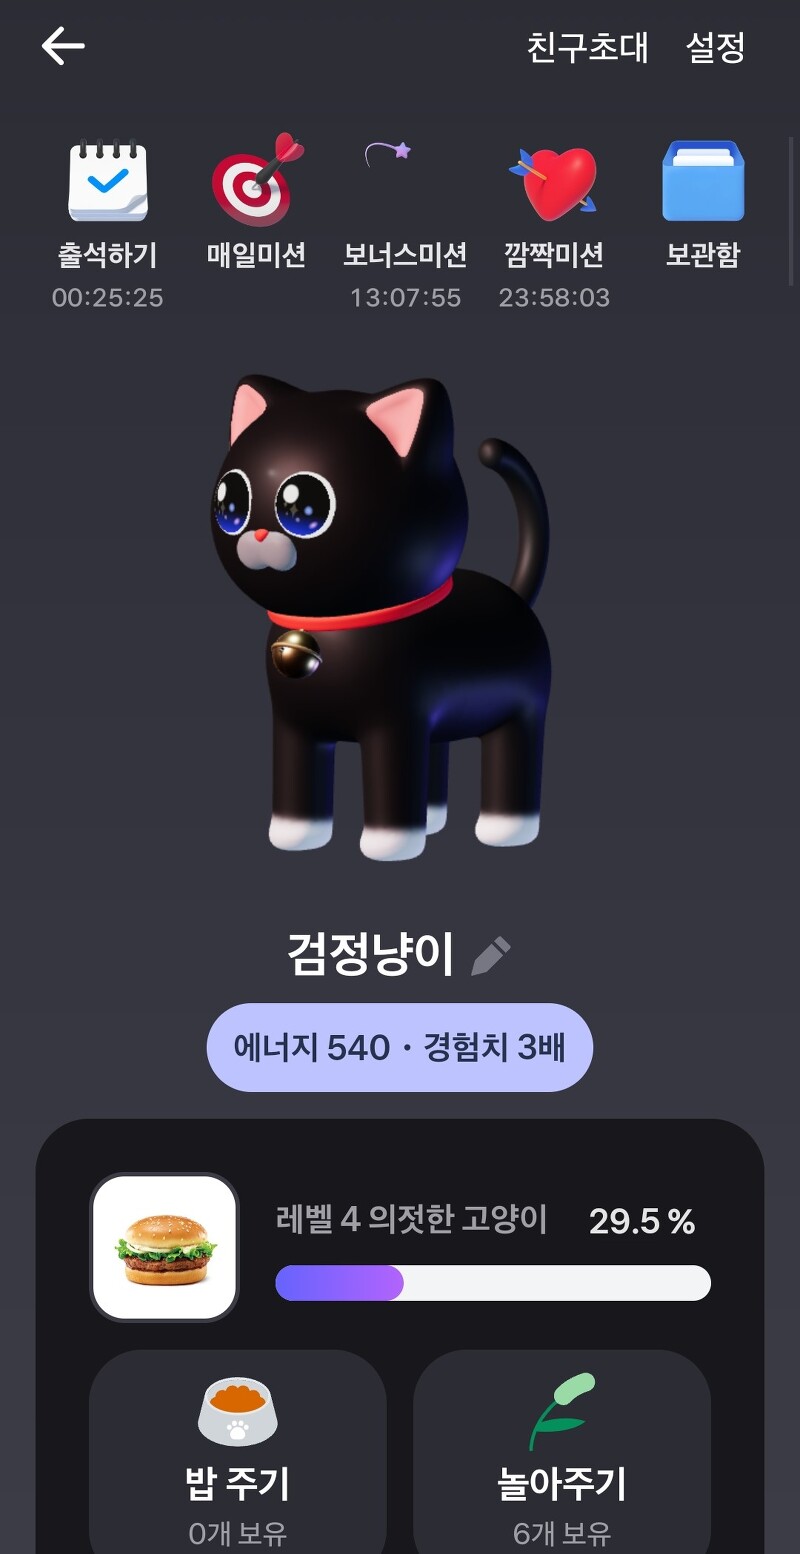 토스 고양이 키우기 링크/이벤트 연장!(12월 31일까지)